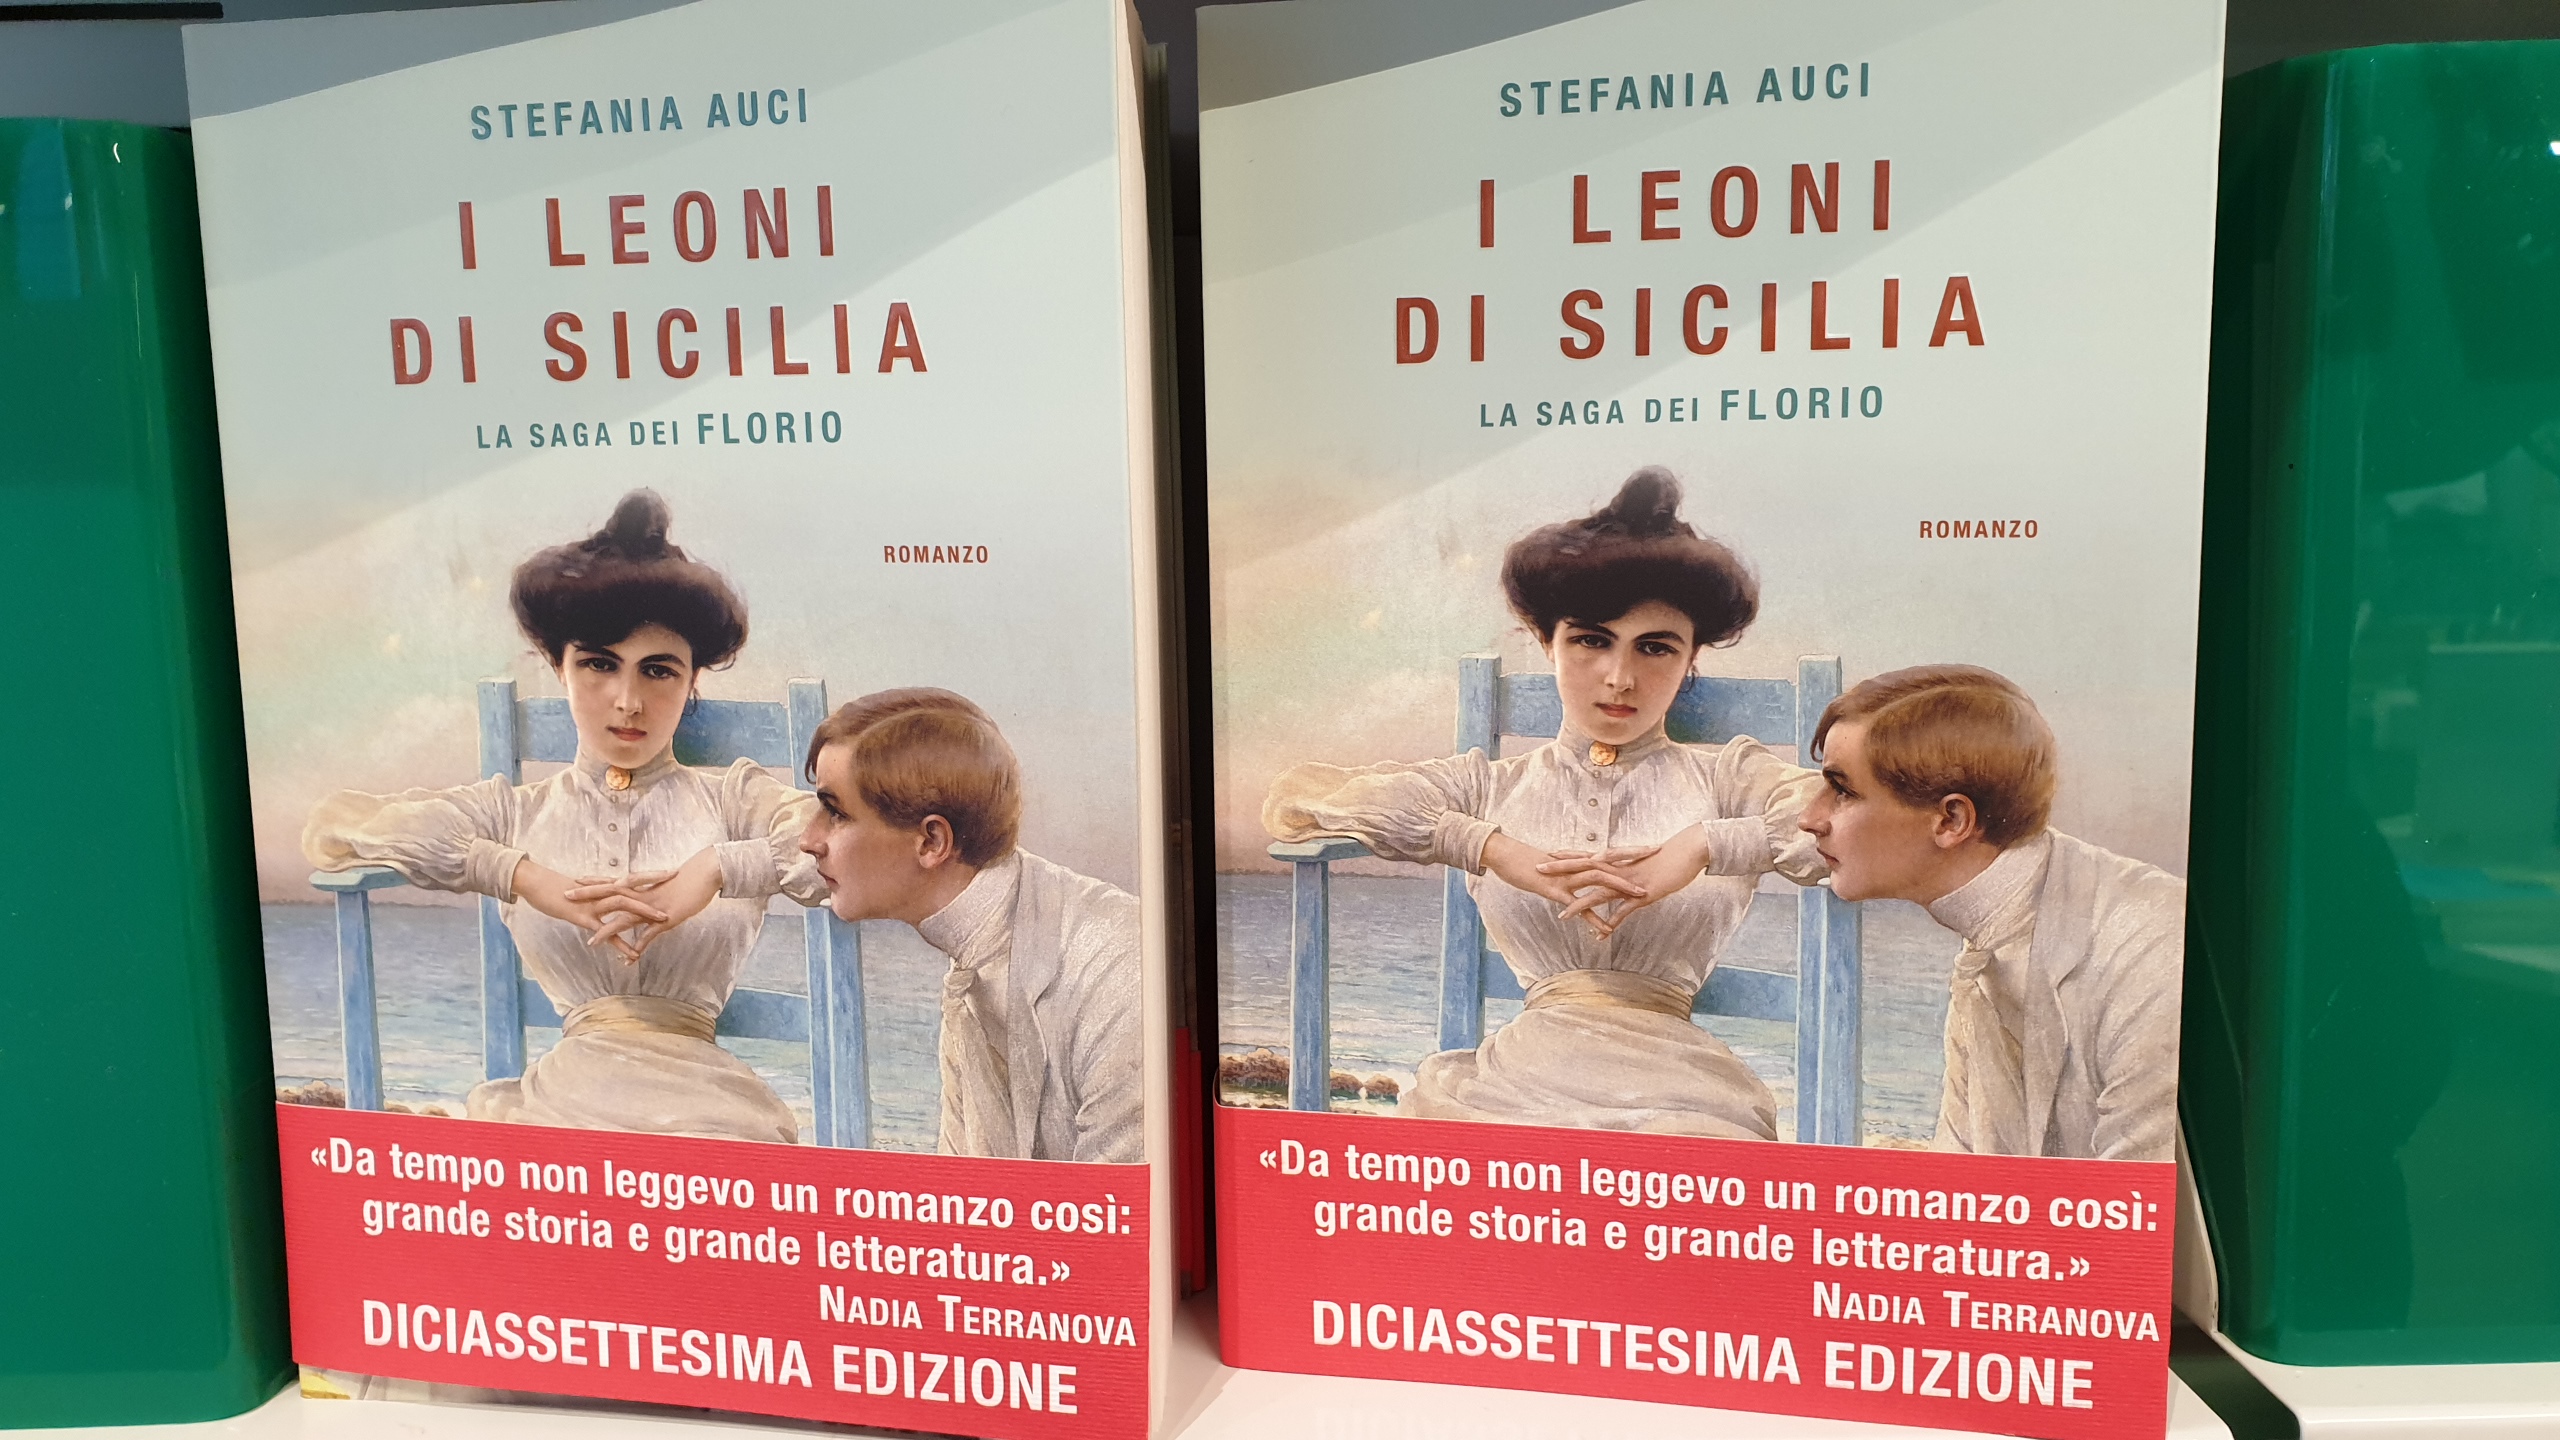 Bilancio libri 2019: I Leoni di Sicilia il più venduto. Bene